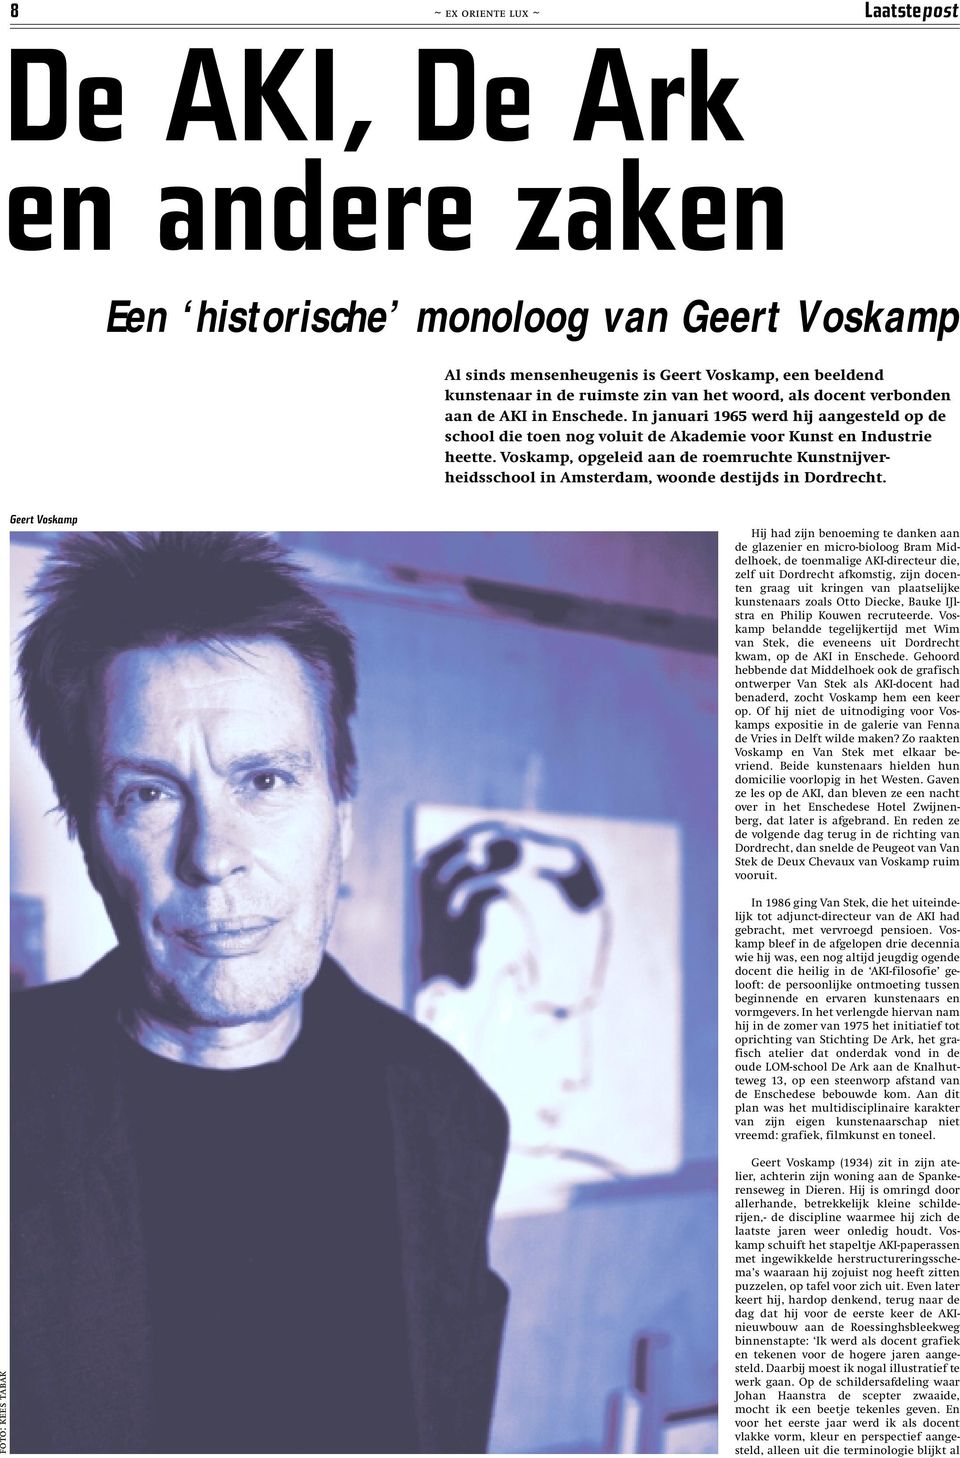 Voskamp, opgeleid aan de roemruchte Kunstnijverheidsschool in Amsterdam, woonde destijds in Dordrecht.